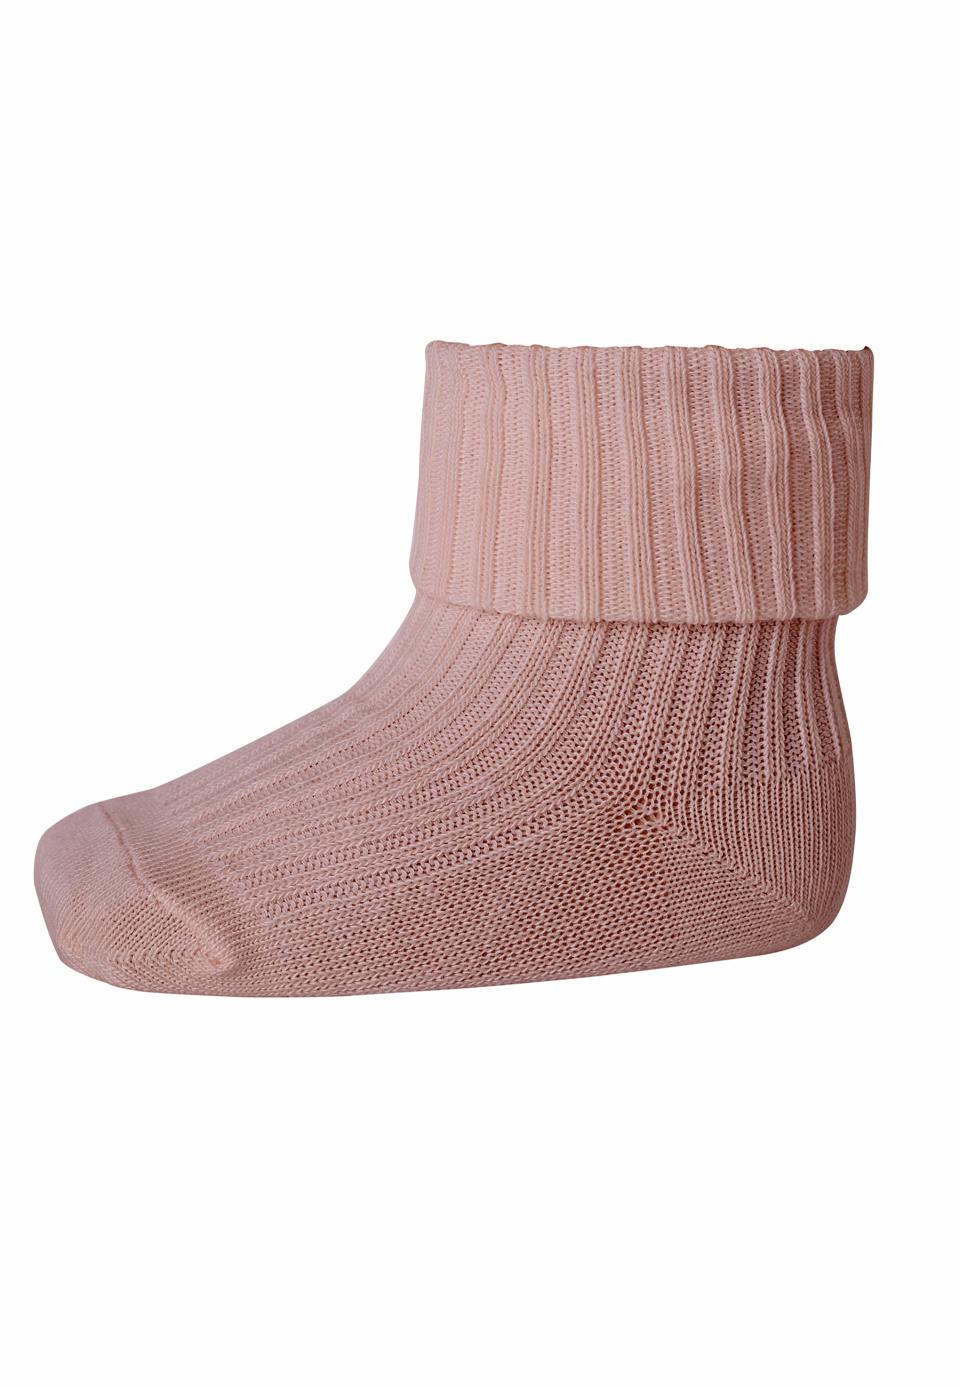 MP Denmark - cotton rib socks - 10-533-0 853 - rose dust - Hyggekids